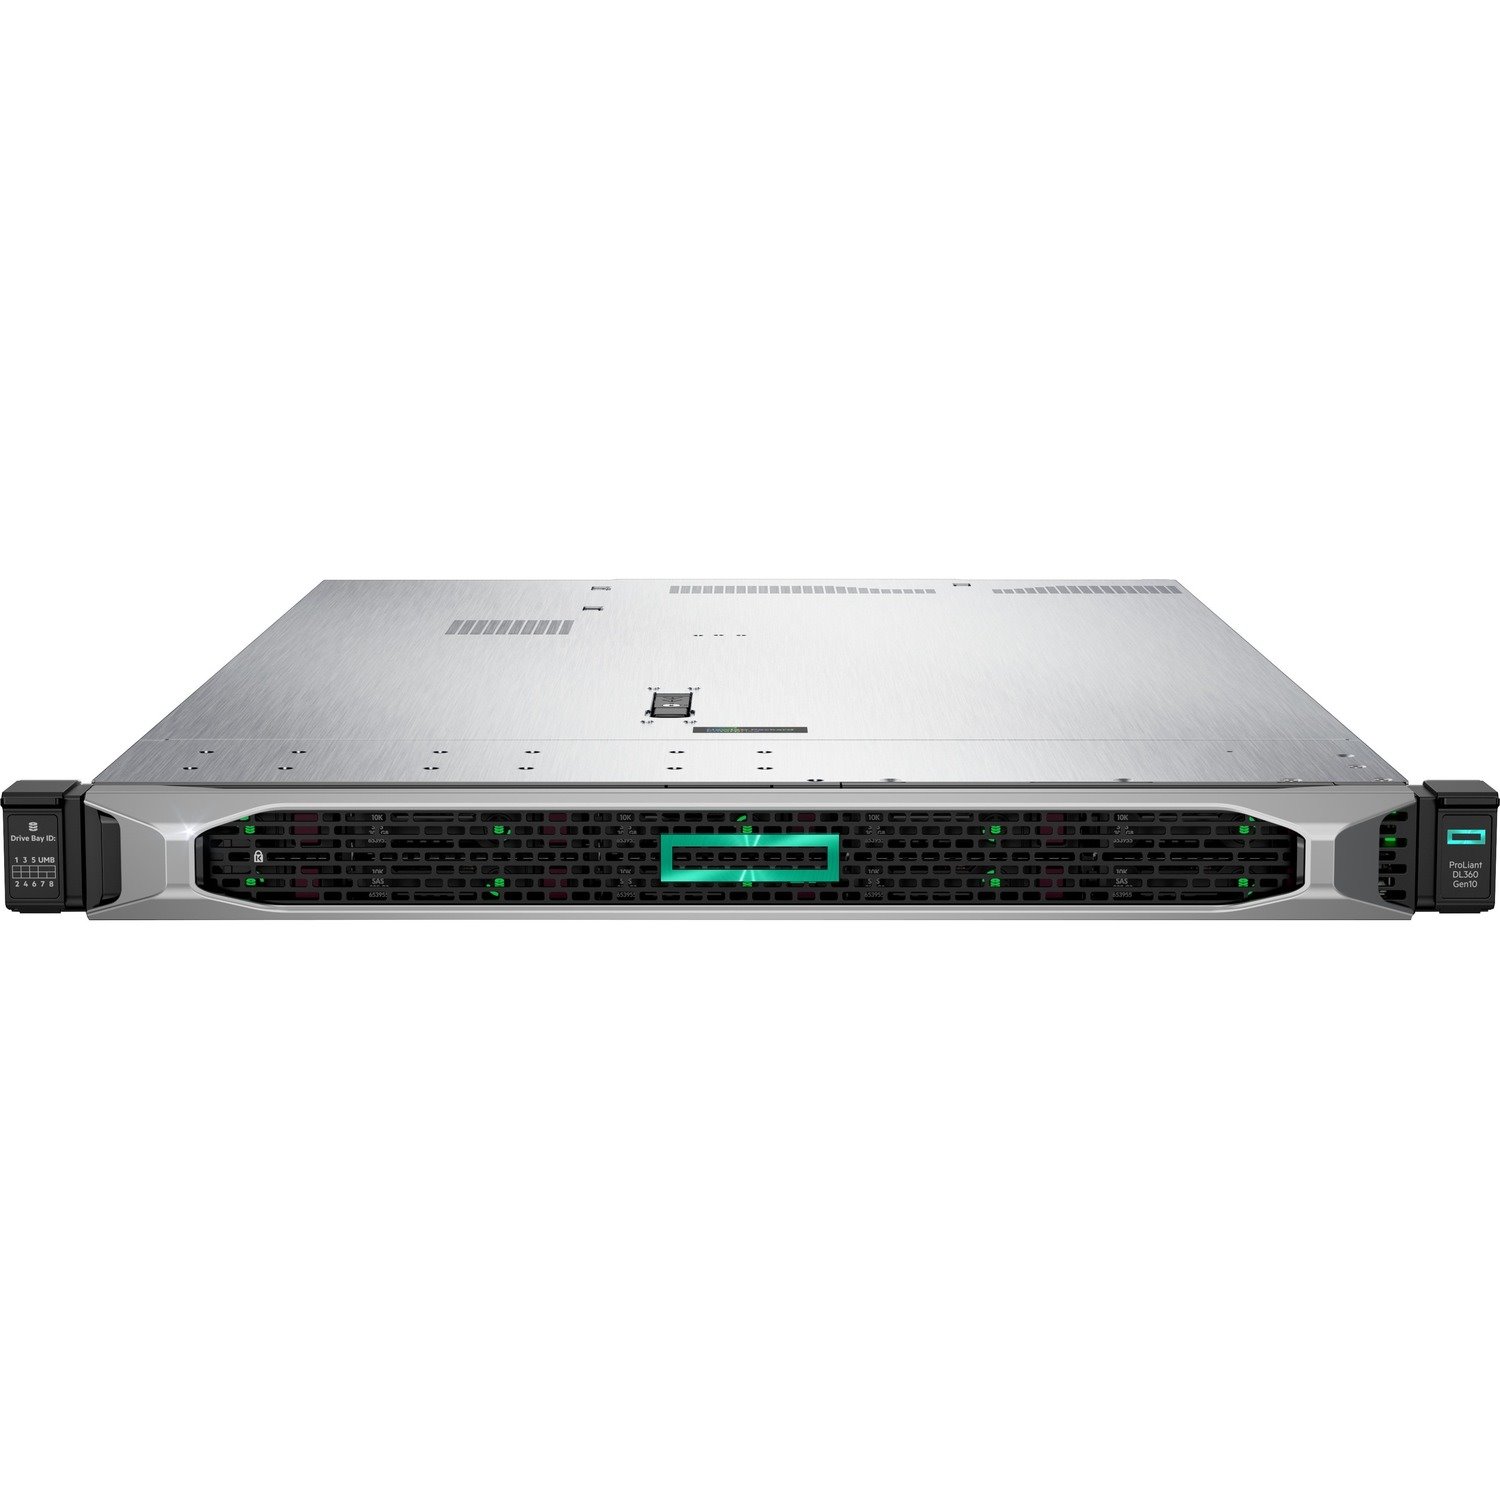 HPE ProLiant DL360 G10 1U Rack Server - Intel Xeon Silver 4210R 2.40 GHz - 16 GB RAM - Serial ATA/600, 12Gb/s SAS Controller